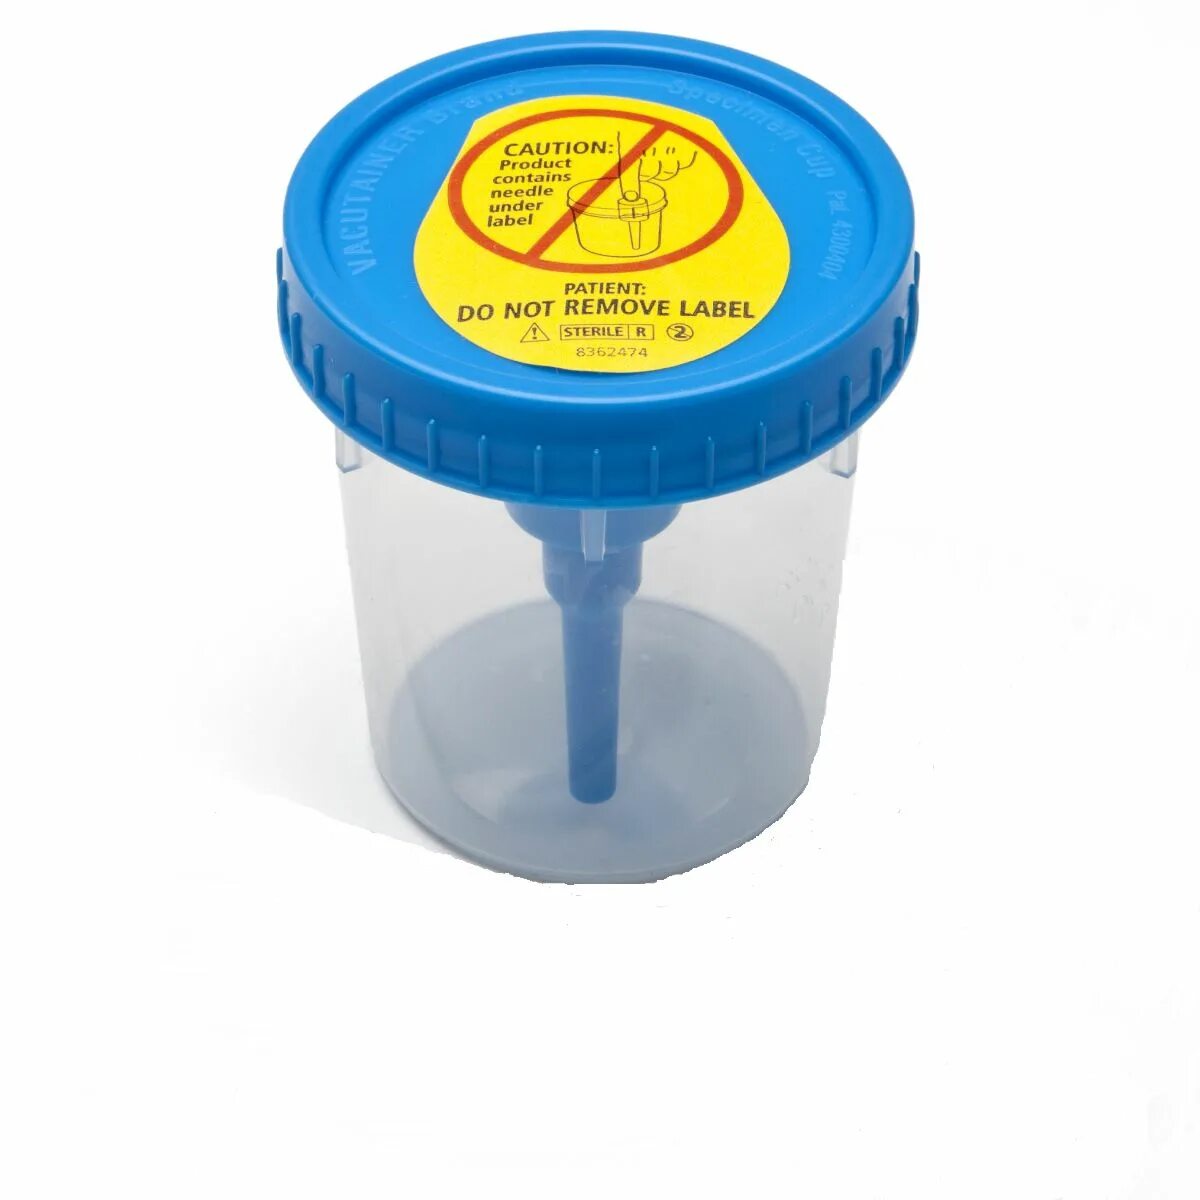 Контейнер для сбора мочи купить. Контейнер bd Vacutainer urine collection Cup. Vacutainer контейнер для мочи. VACUETTE urine Cup - контейнер для мочи (встр.держатель). Пробирка для сбора мочи Vacutainer.